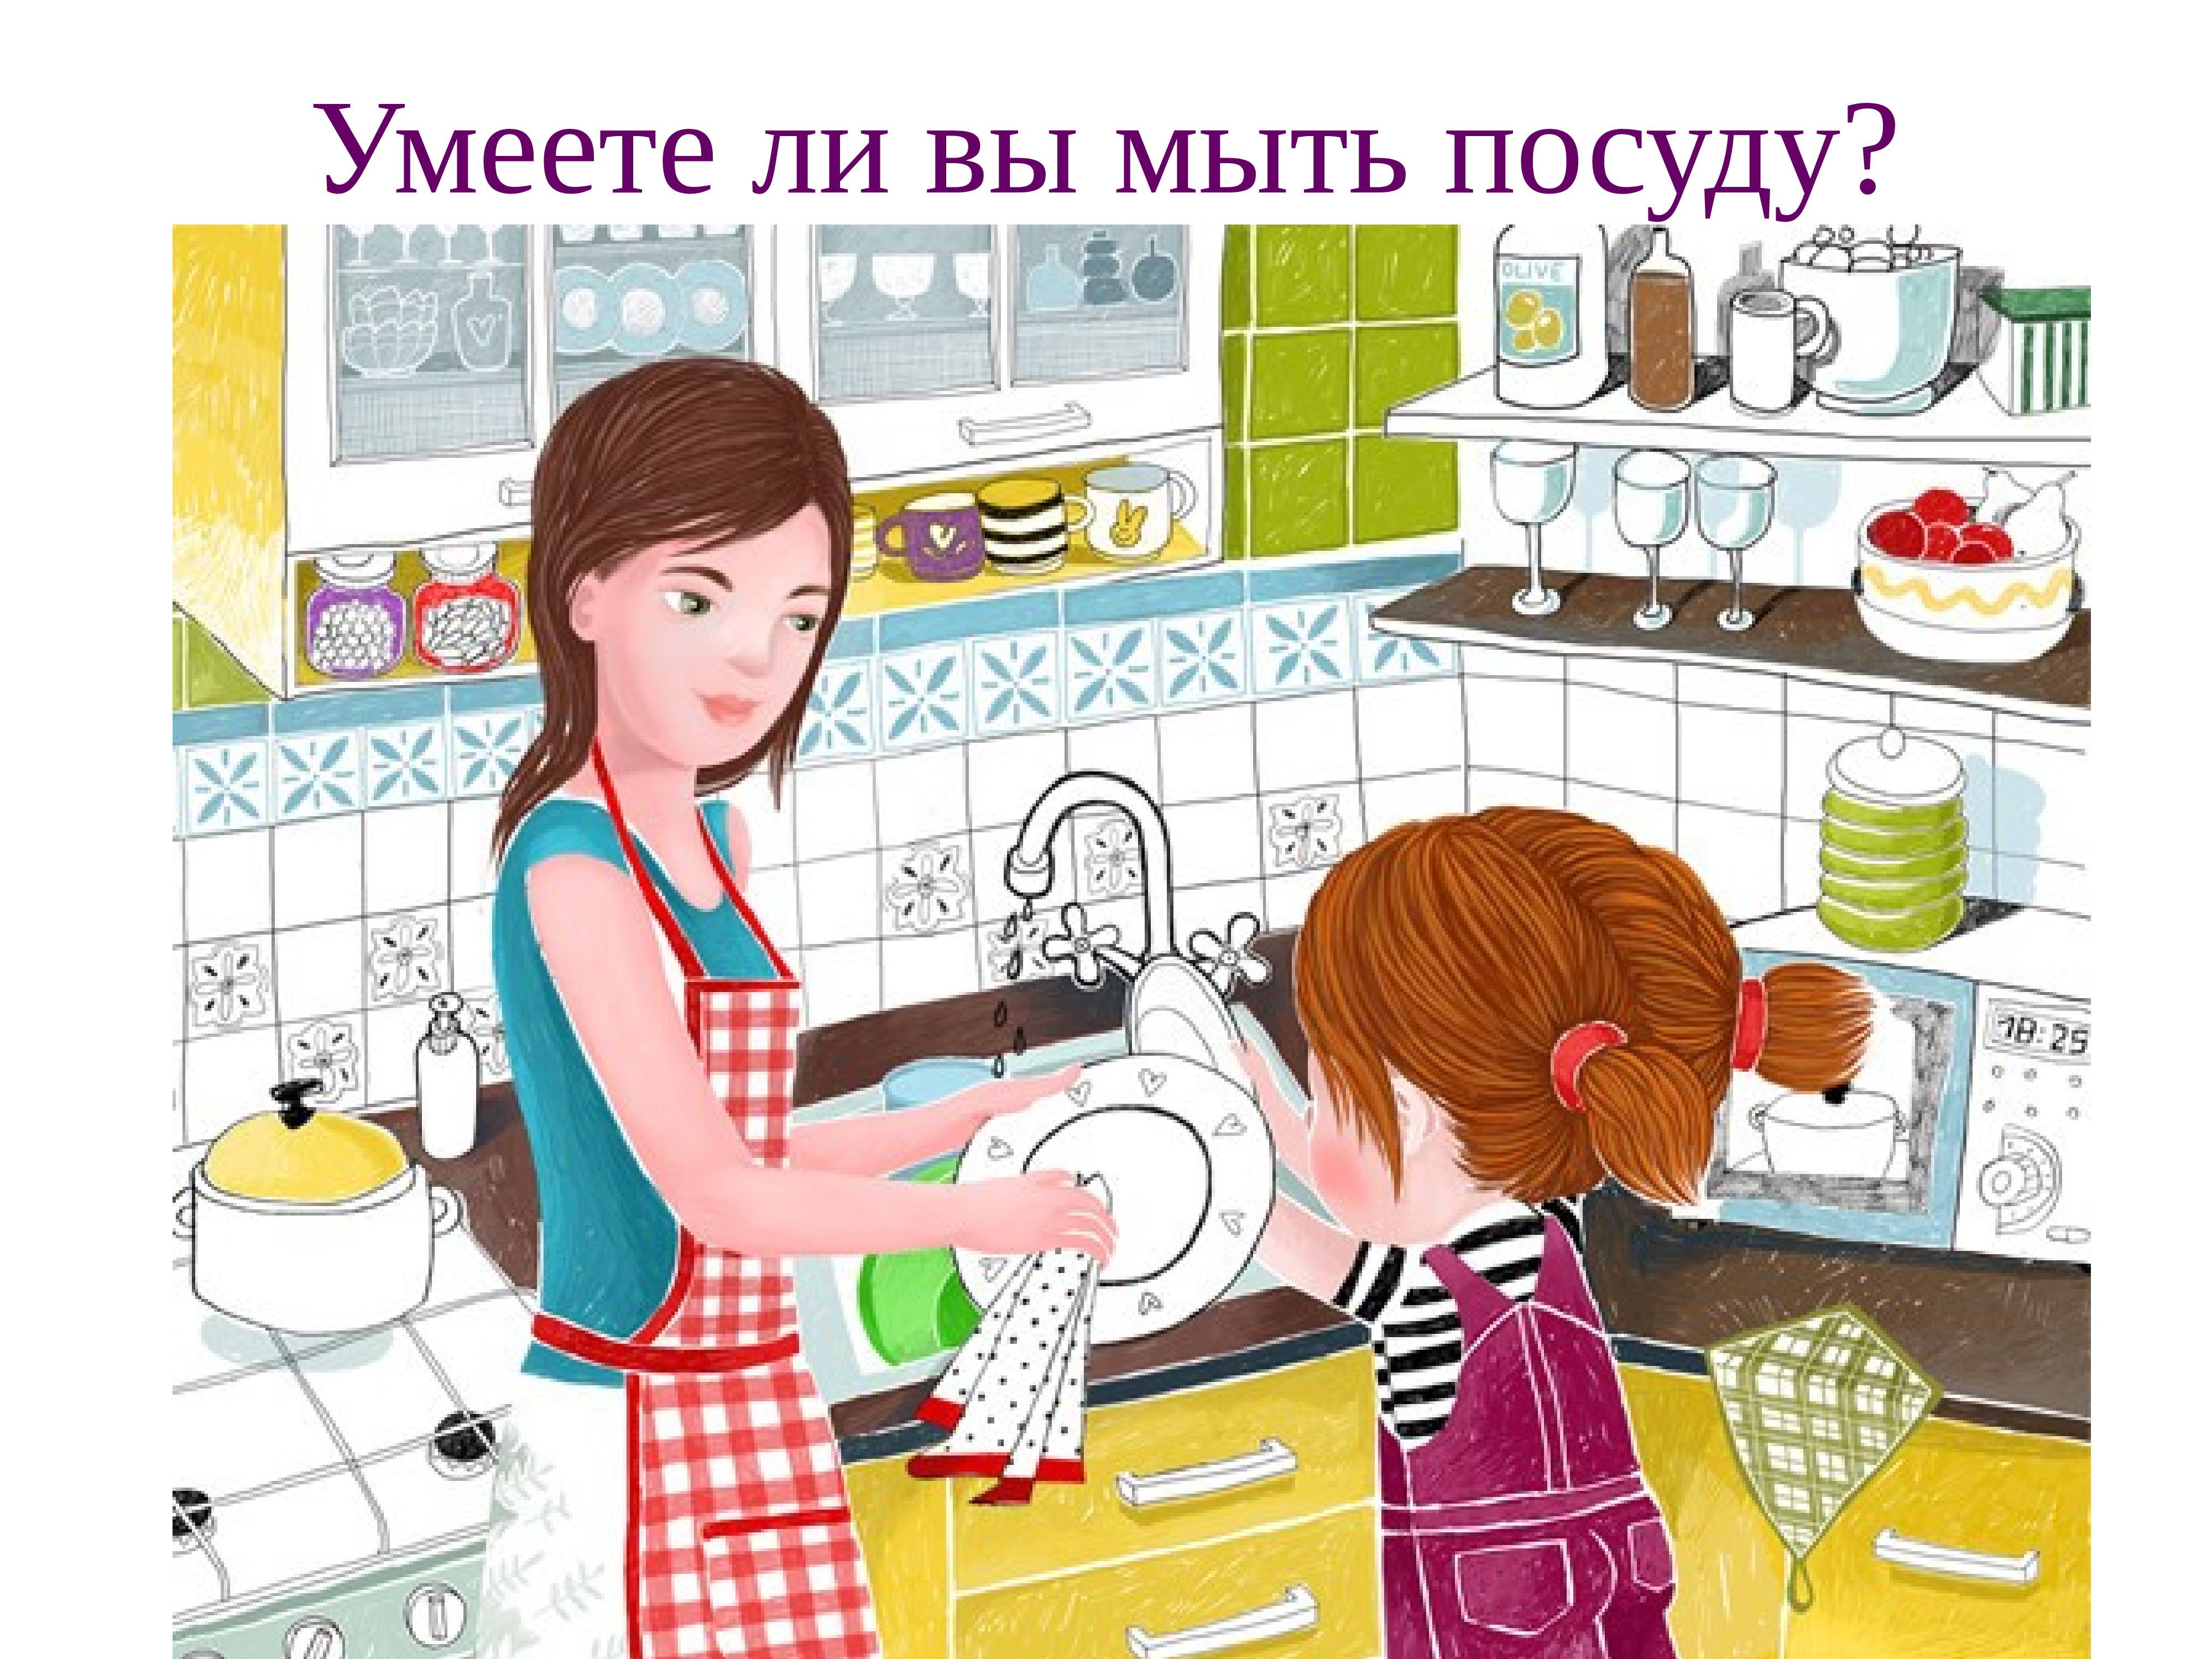 Картина помогаем маме. Мама моет посуду. Помогает маме картина. Мамин помощник рисунок. Картинки помогаю маме.